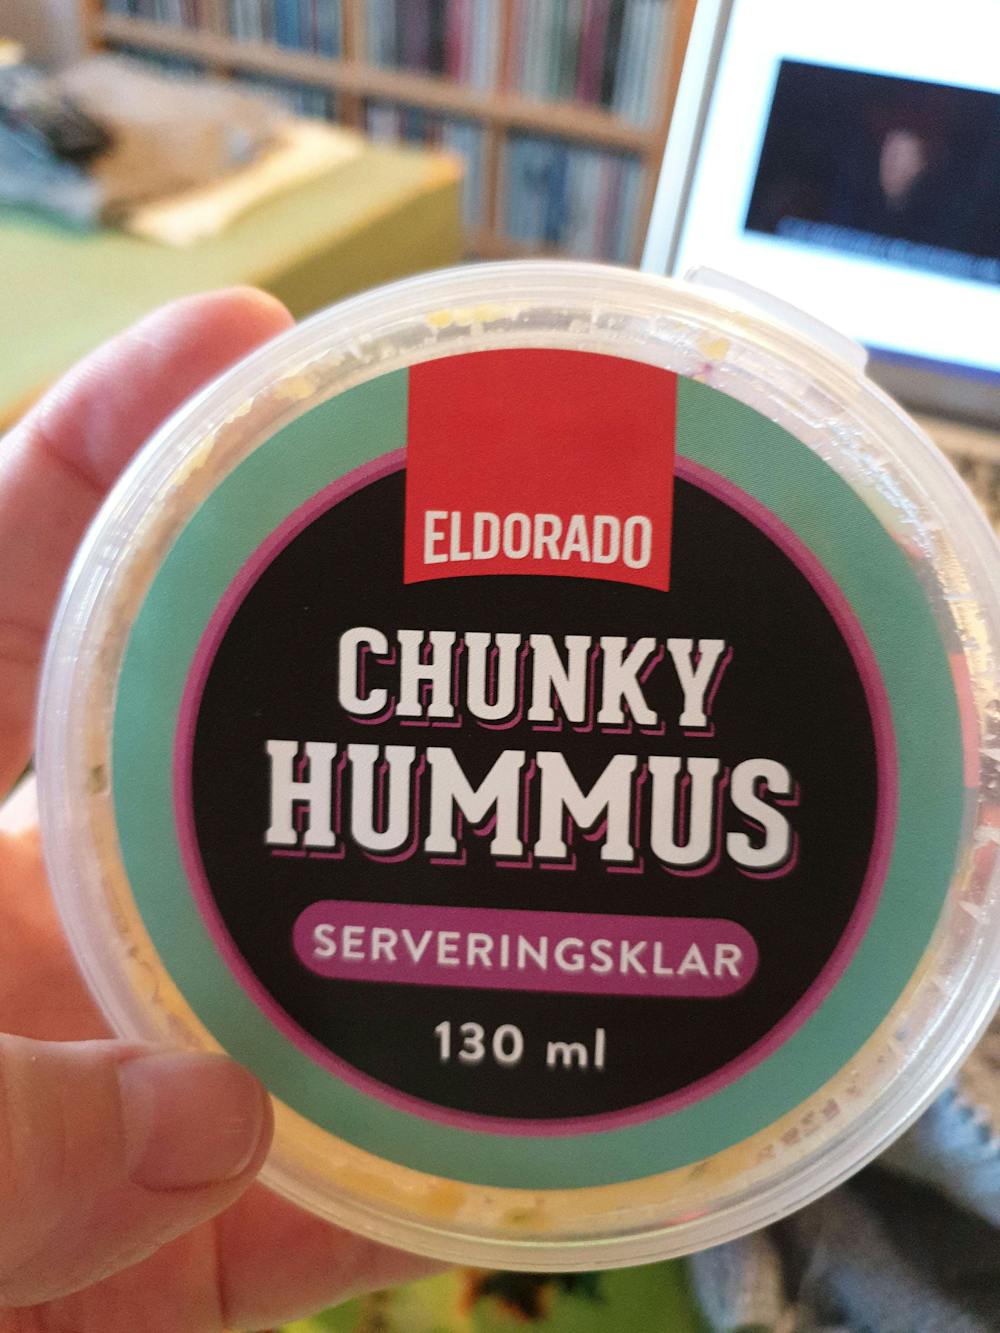 Chunky hummus, Eldorado